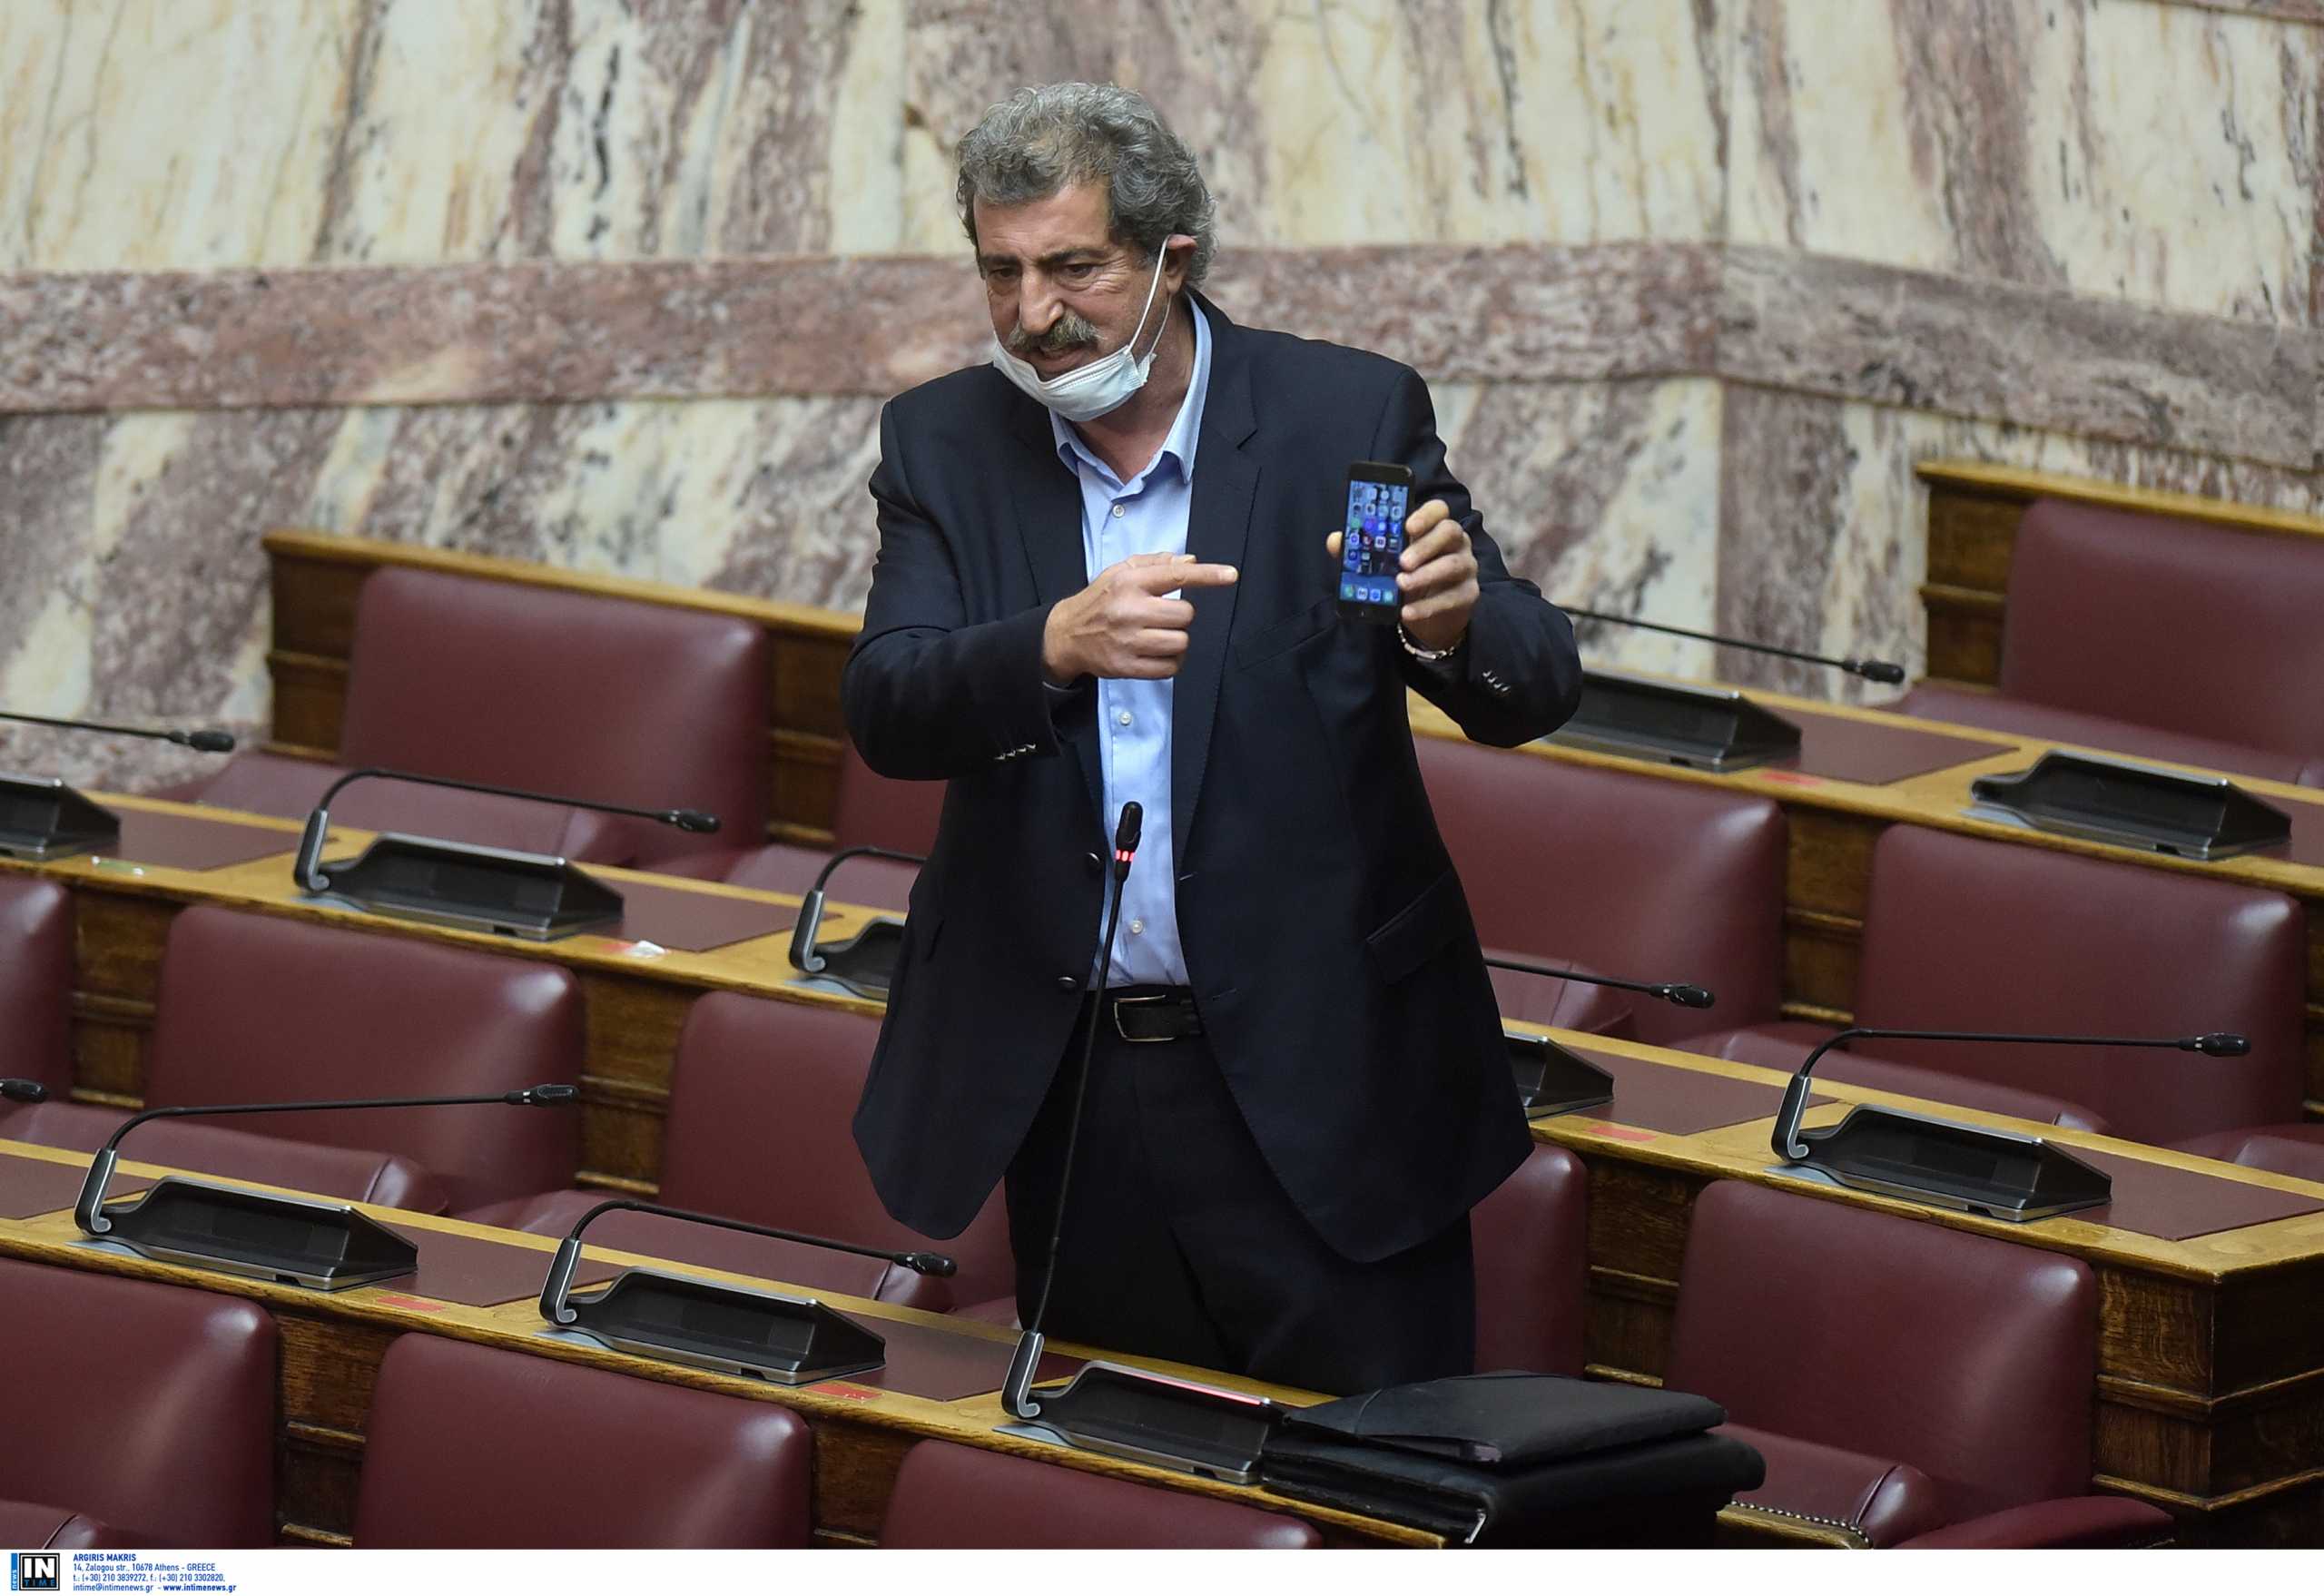 Άρση ασυλίας Πολάκη: Θύελλα στη Βουλή και αντιδράσεις για όσα είπε ο ίδιος